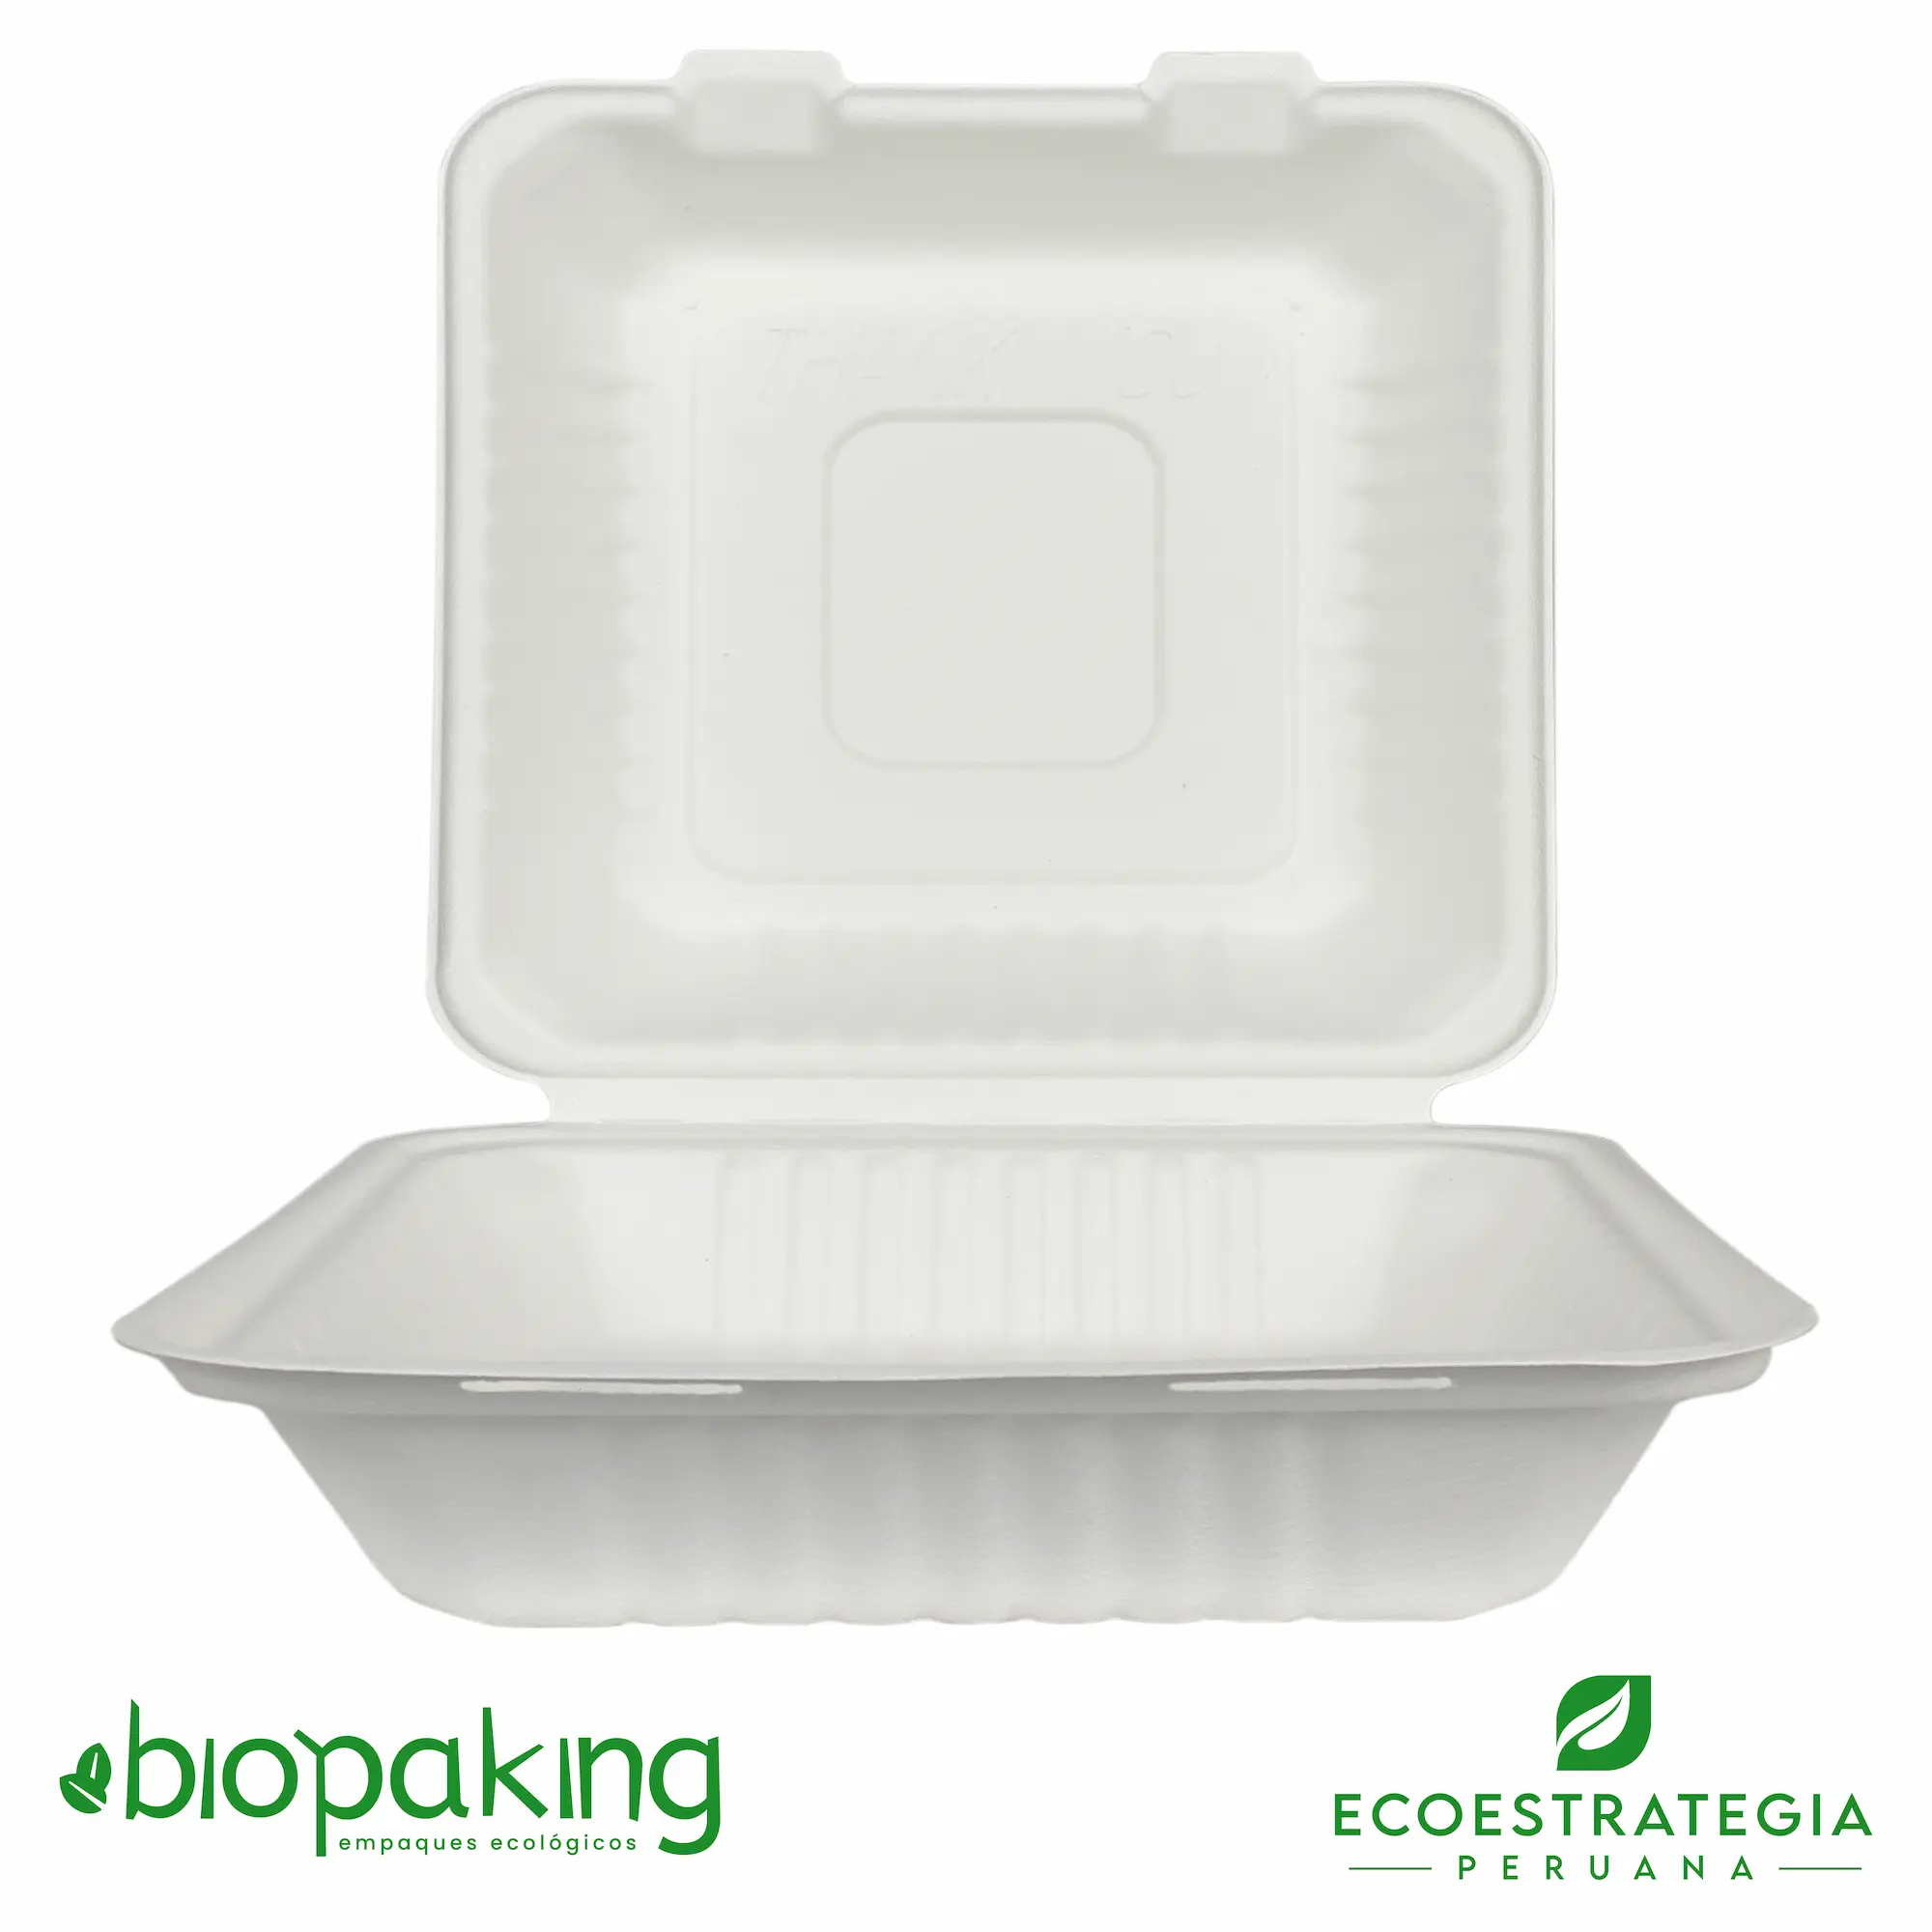 El envase biodegradable CT1 de código EP10 es un envase de fibra de caña conocido tambien como CT1 Biodegradable, Box grande, Contenedor de fibra de caña ct1, descartable biodegradable ct1, envases biodegradables ct1, contenedor cuadrado 1500 ml, contenedor biodegradable bisagra 9 x 9”, envase 9 x 9 pulgadas pulpa de caña, ksfc-01, cbx-23-g, fbox9x9, bcs10, 100029, b09, tp004 ct1, contenedor eco 1500ml (ct1), contenedor bisagra 1200 ml, envase biodegradable 9 x 9”, Envase grande, Contenedor 1 bioform fibra-ks bagazo de caña, contenedor 1 de fibra, contenedor eco 1250 (23x15), contenedor ct1, ct1 fibra de caña, ct1 envase biodegradable Perú, importadores de envases biodegradable ct1, distribuidores ct1 biodegradable, mayoristas ct1 biodegradable.